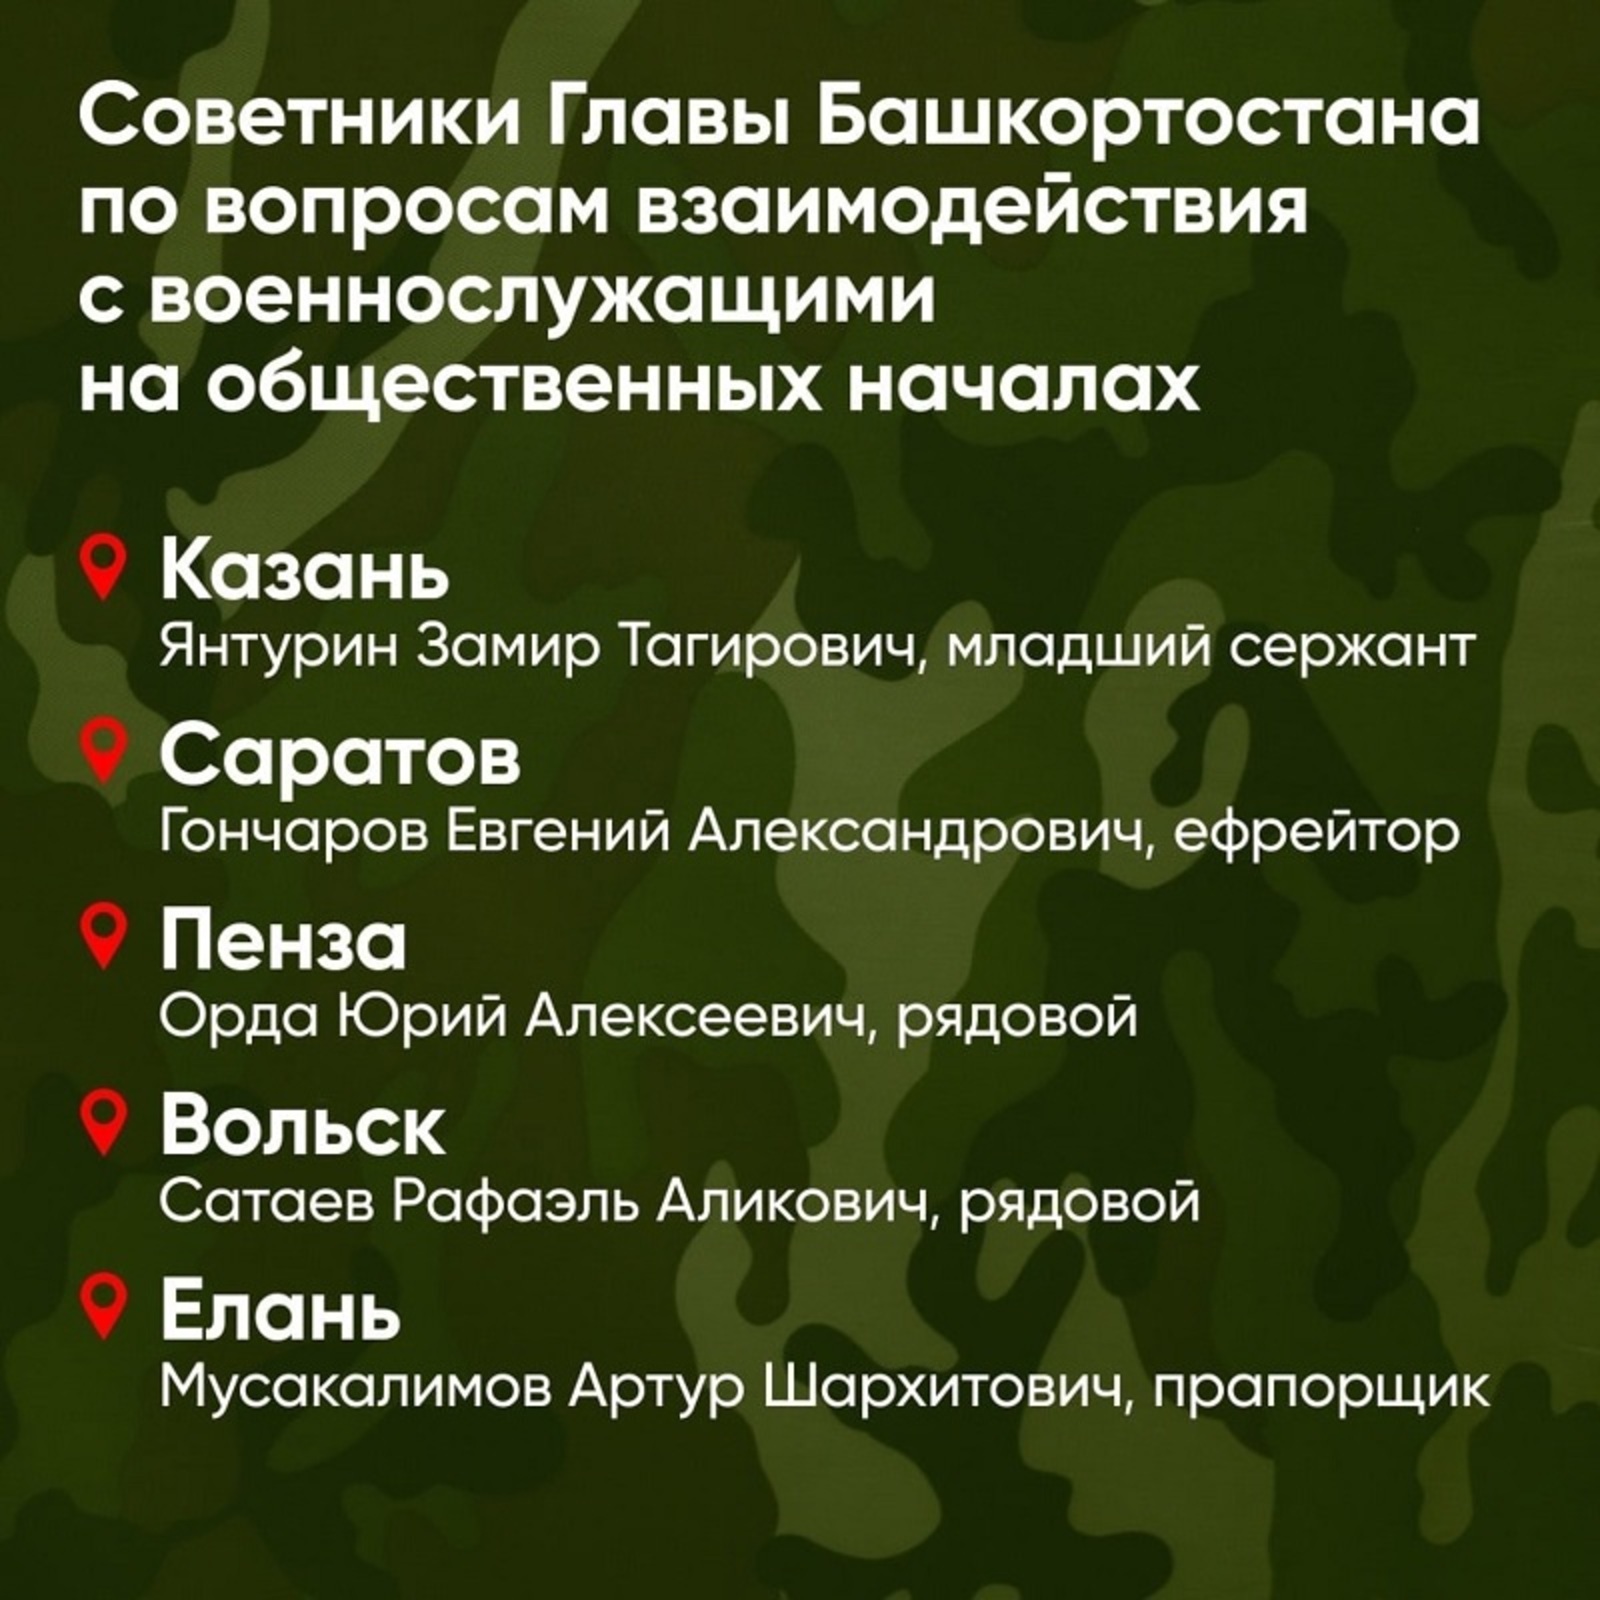 Советники главы Башкирии по связи с военнослужащими – кто они?